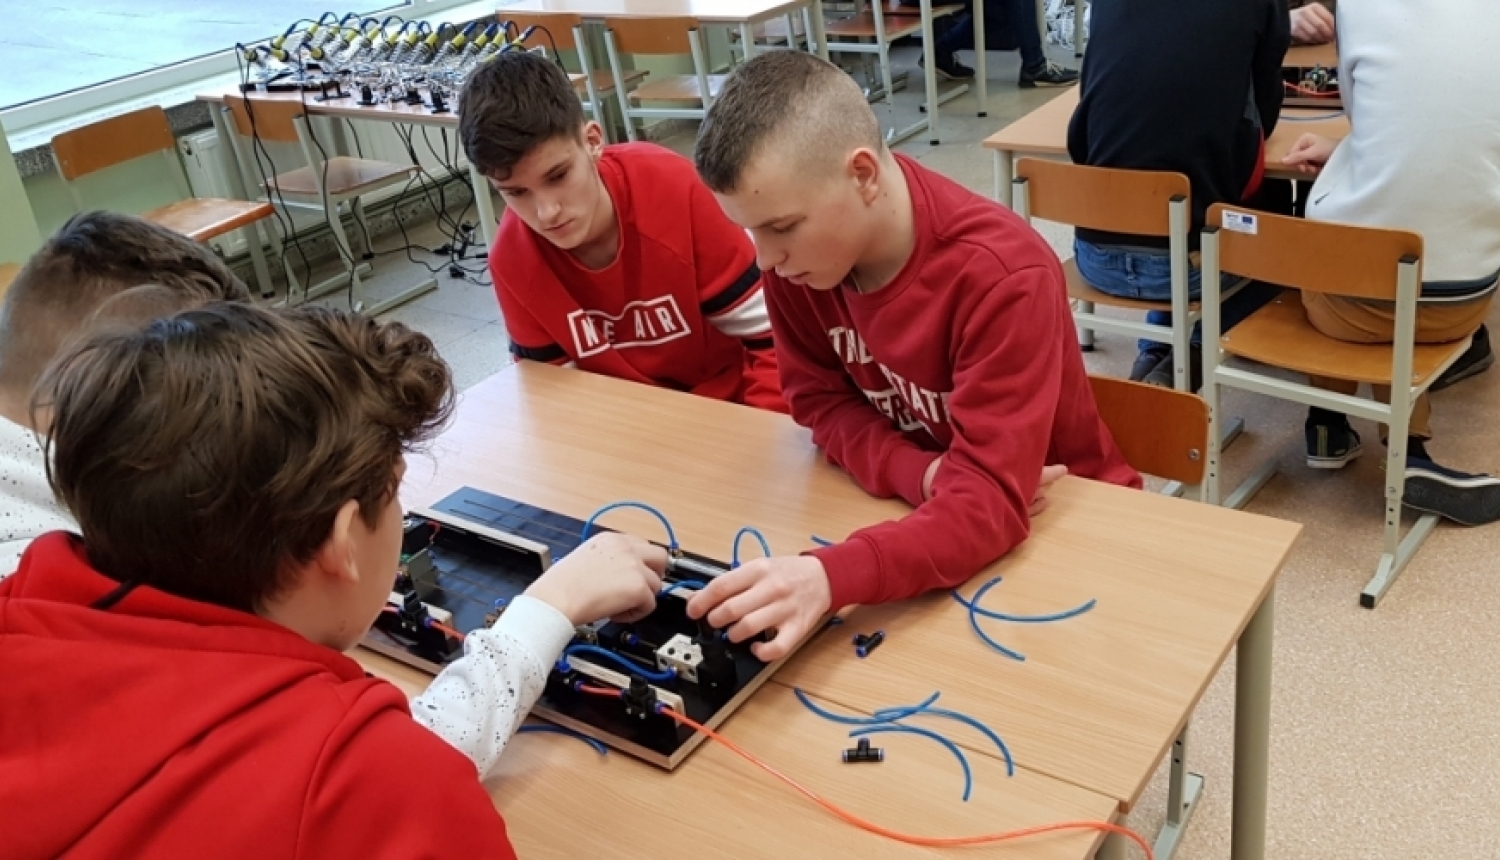 Jelgavas novada skolu audzēkņi apgūst prasmes elektronikas un mehatronikas jomā